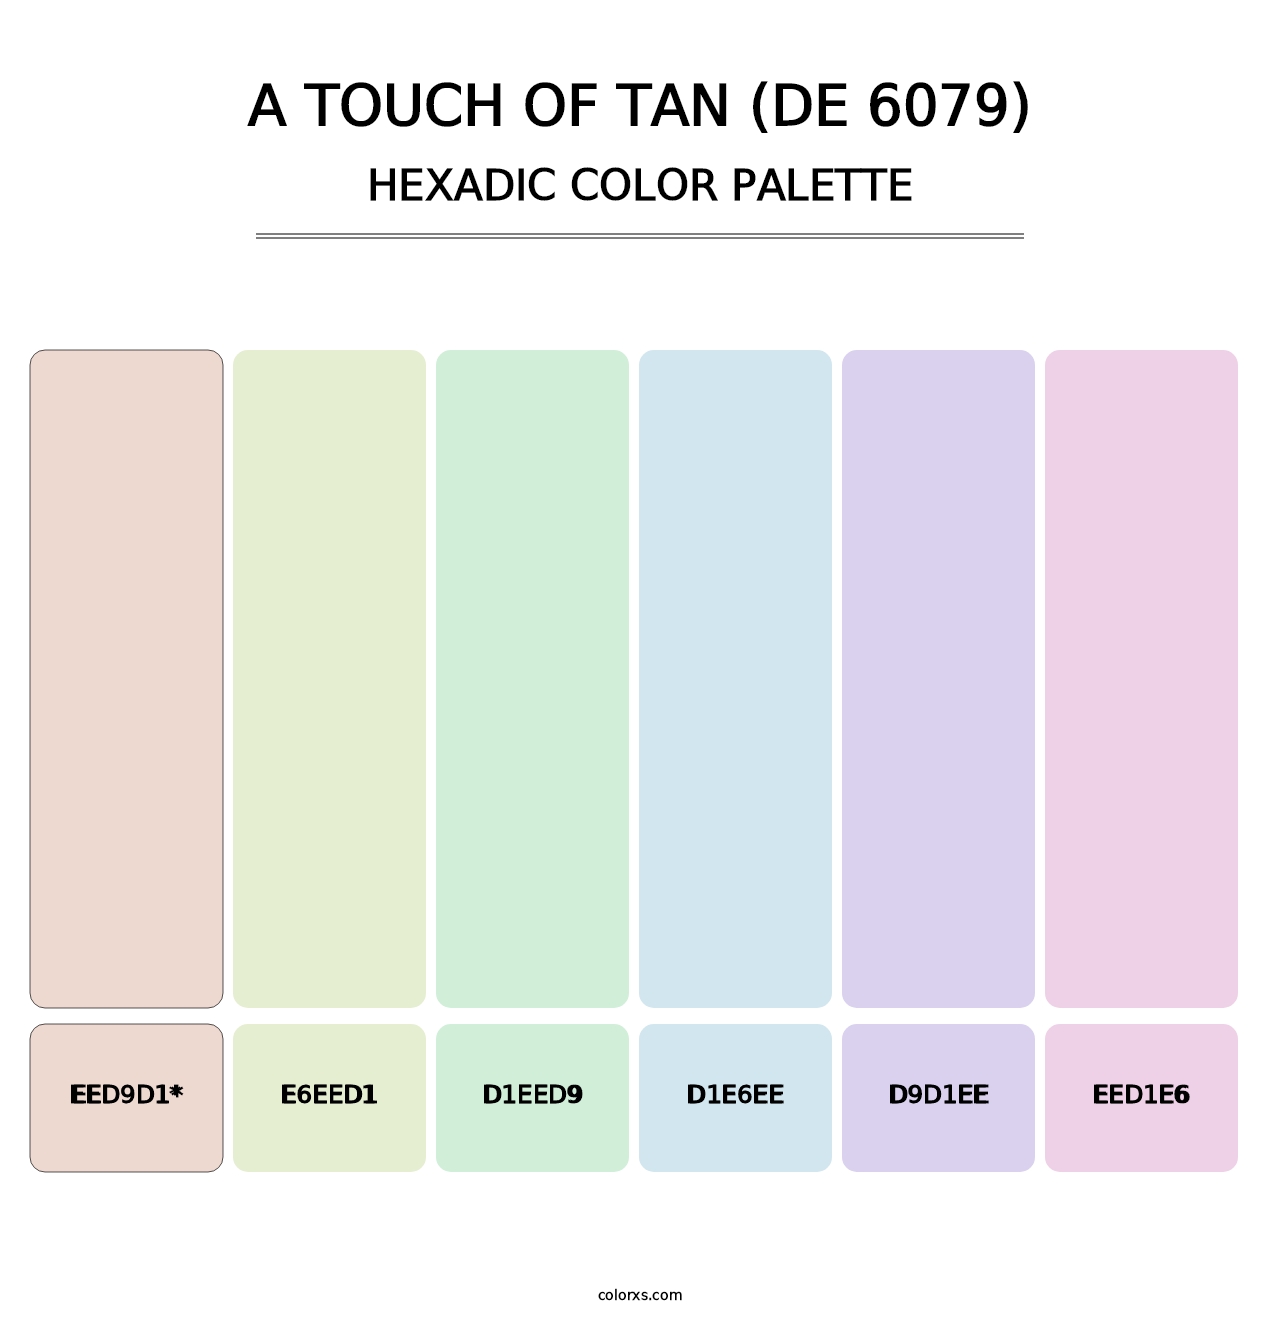 A Touch of Tan (DE 6079) - Hexadic Color Palette